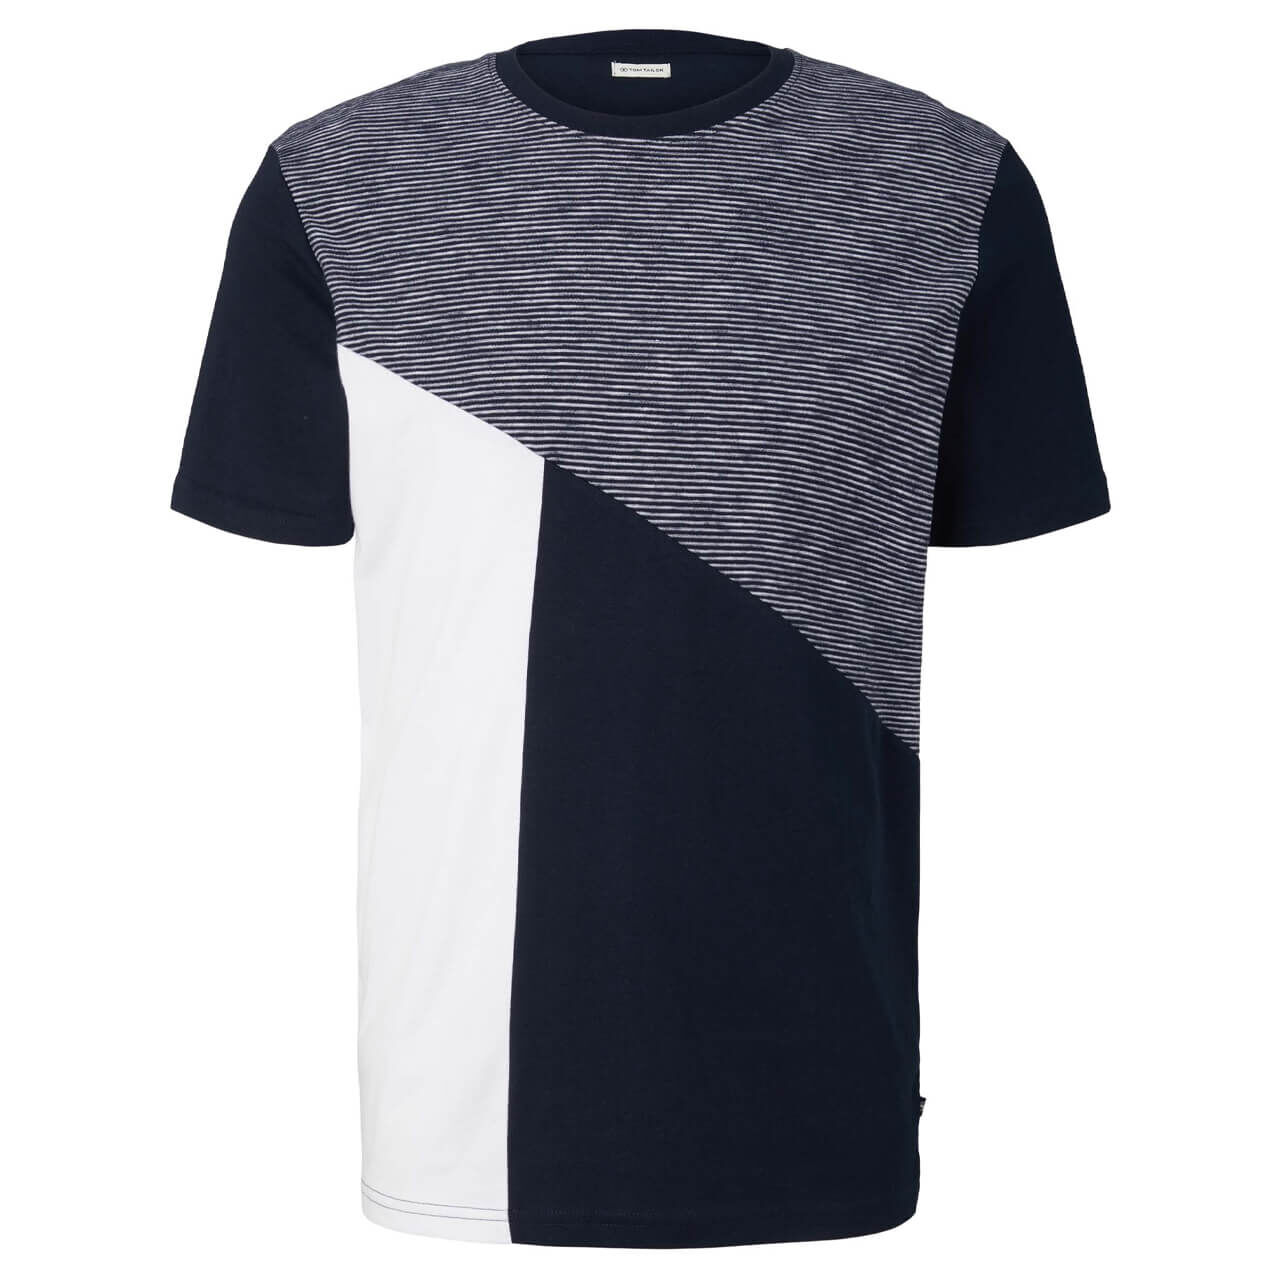 Tom Tailor T-Shirt für Herren in Dunkelblau gemustert, FarbNr.: 10688